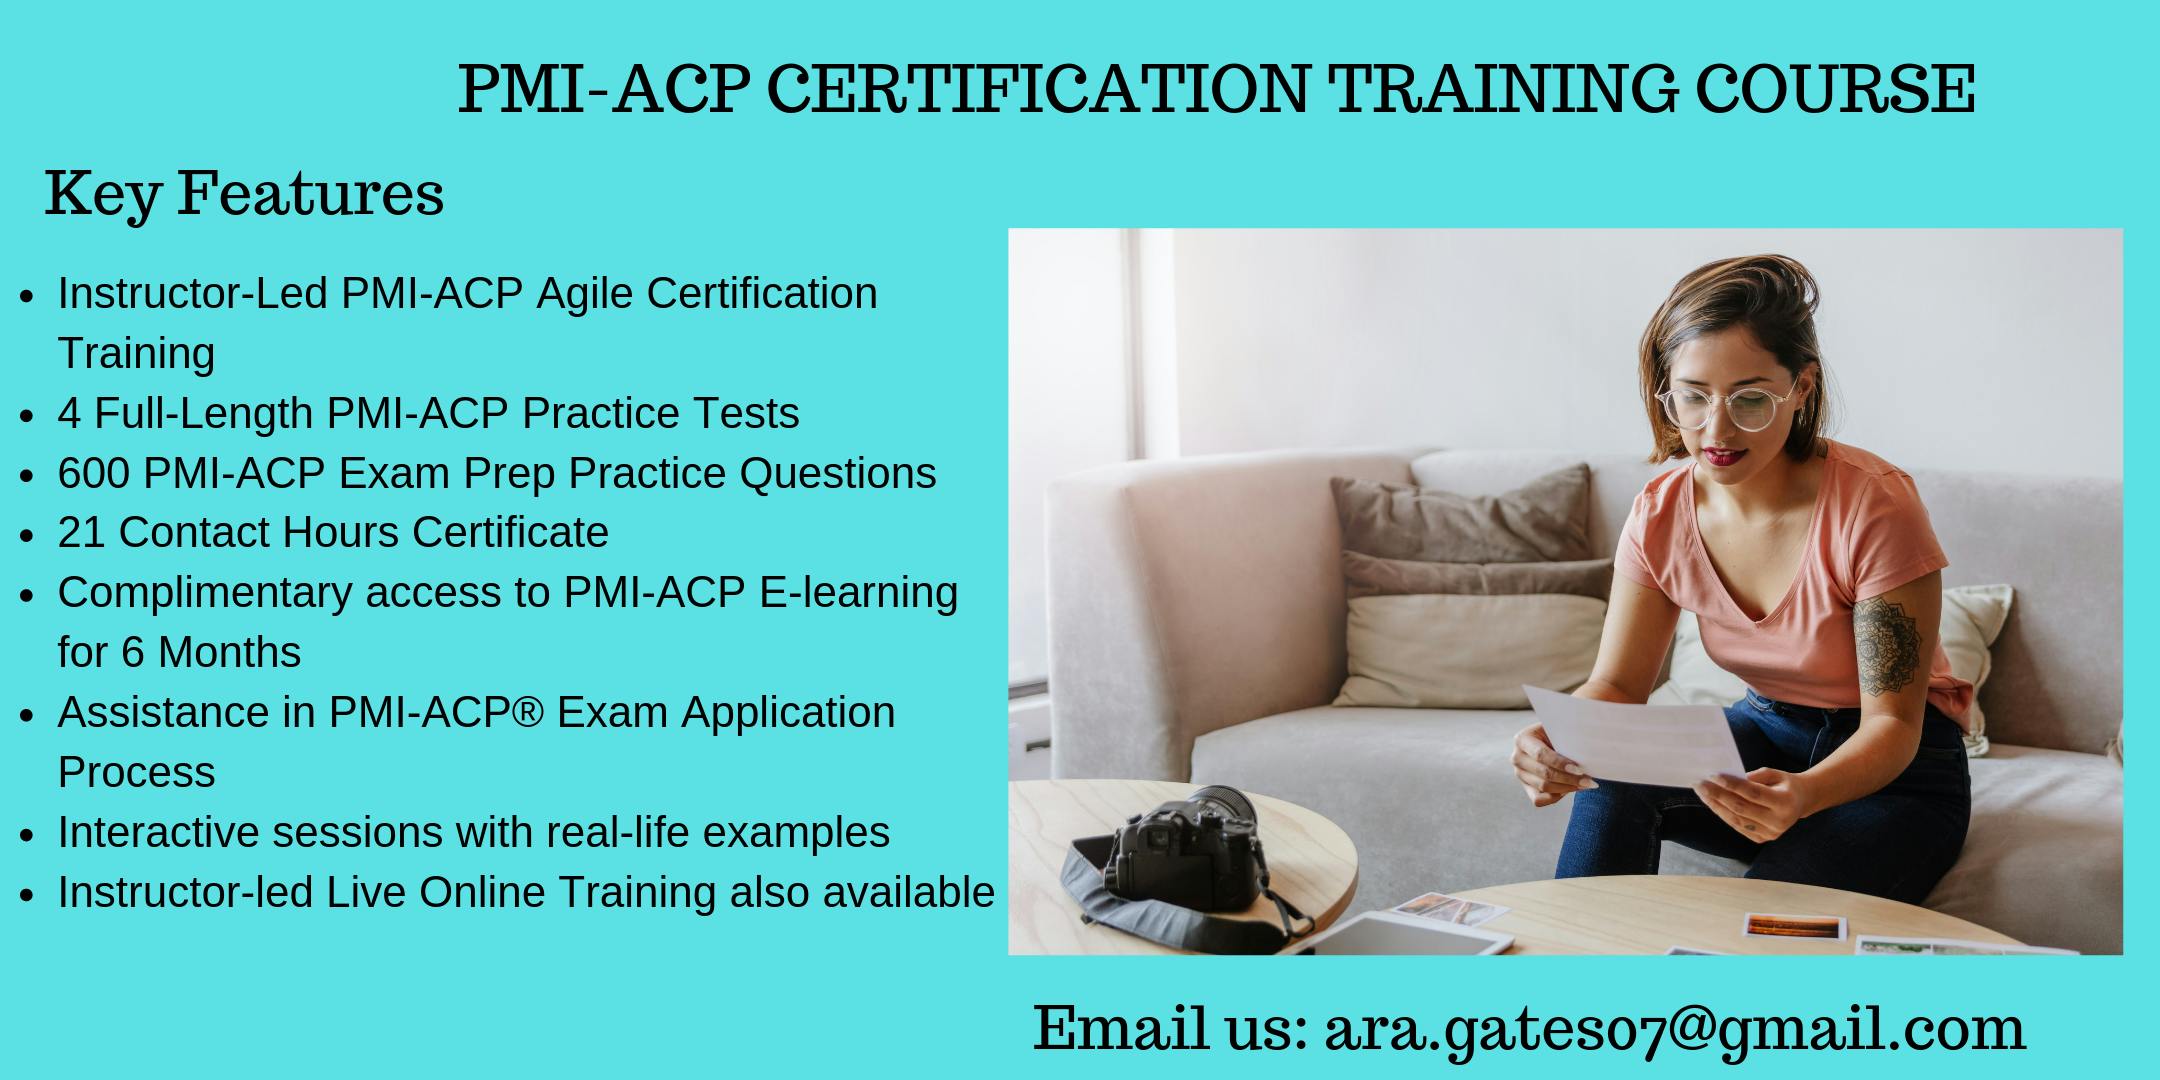 PMI-ACP Exam Prep Course in Northampton, MA